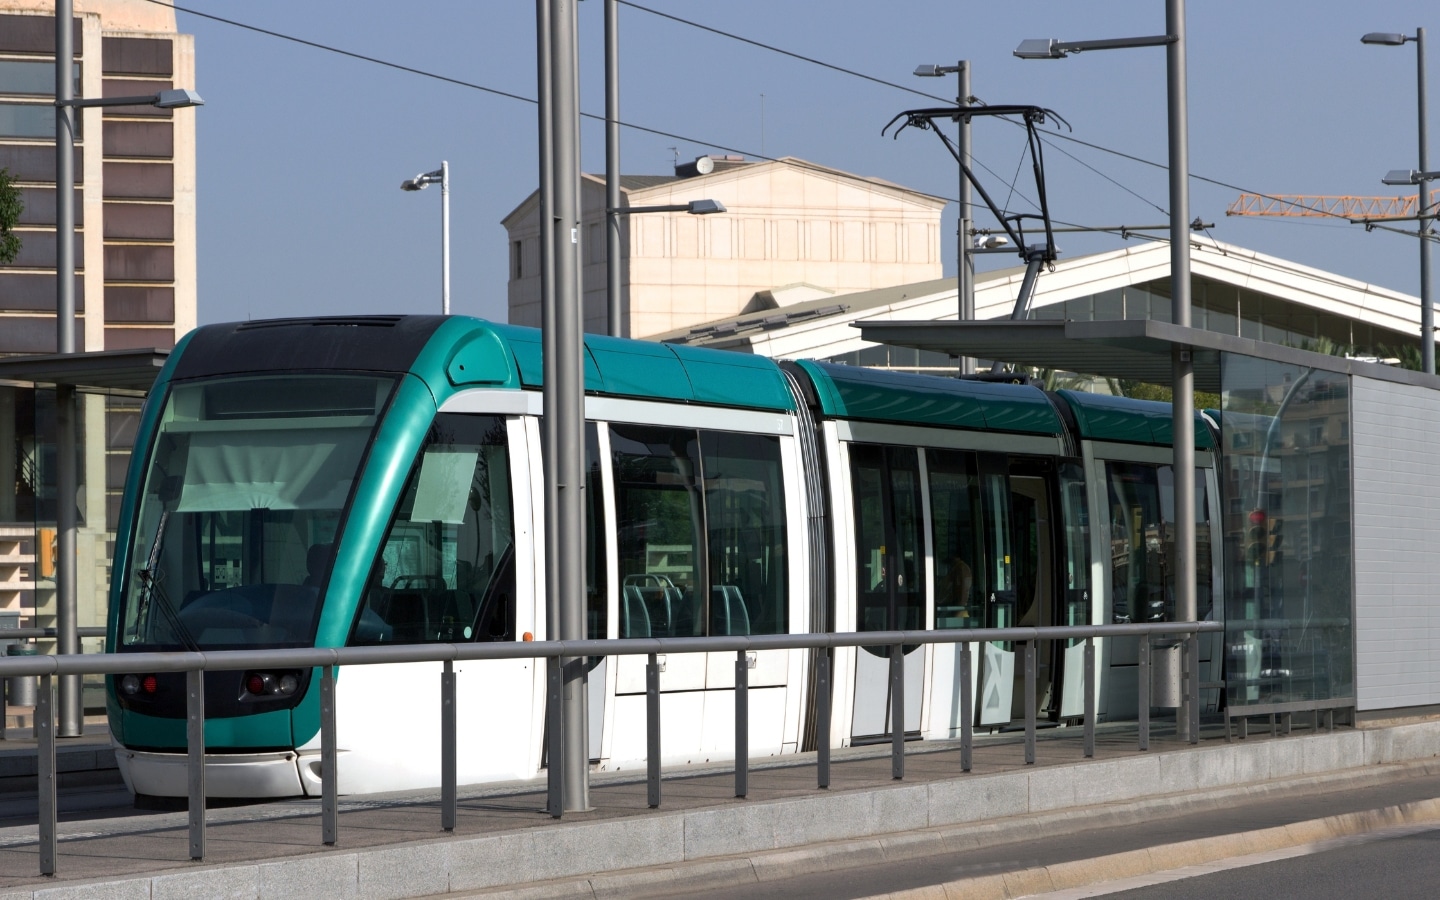 Trams in Barcelona